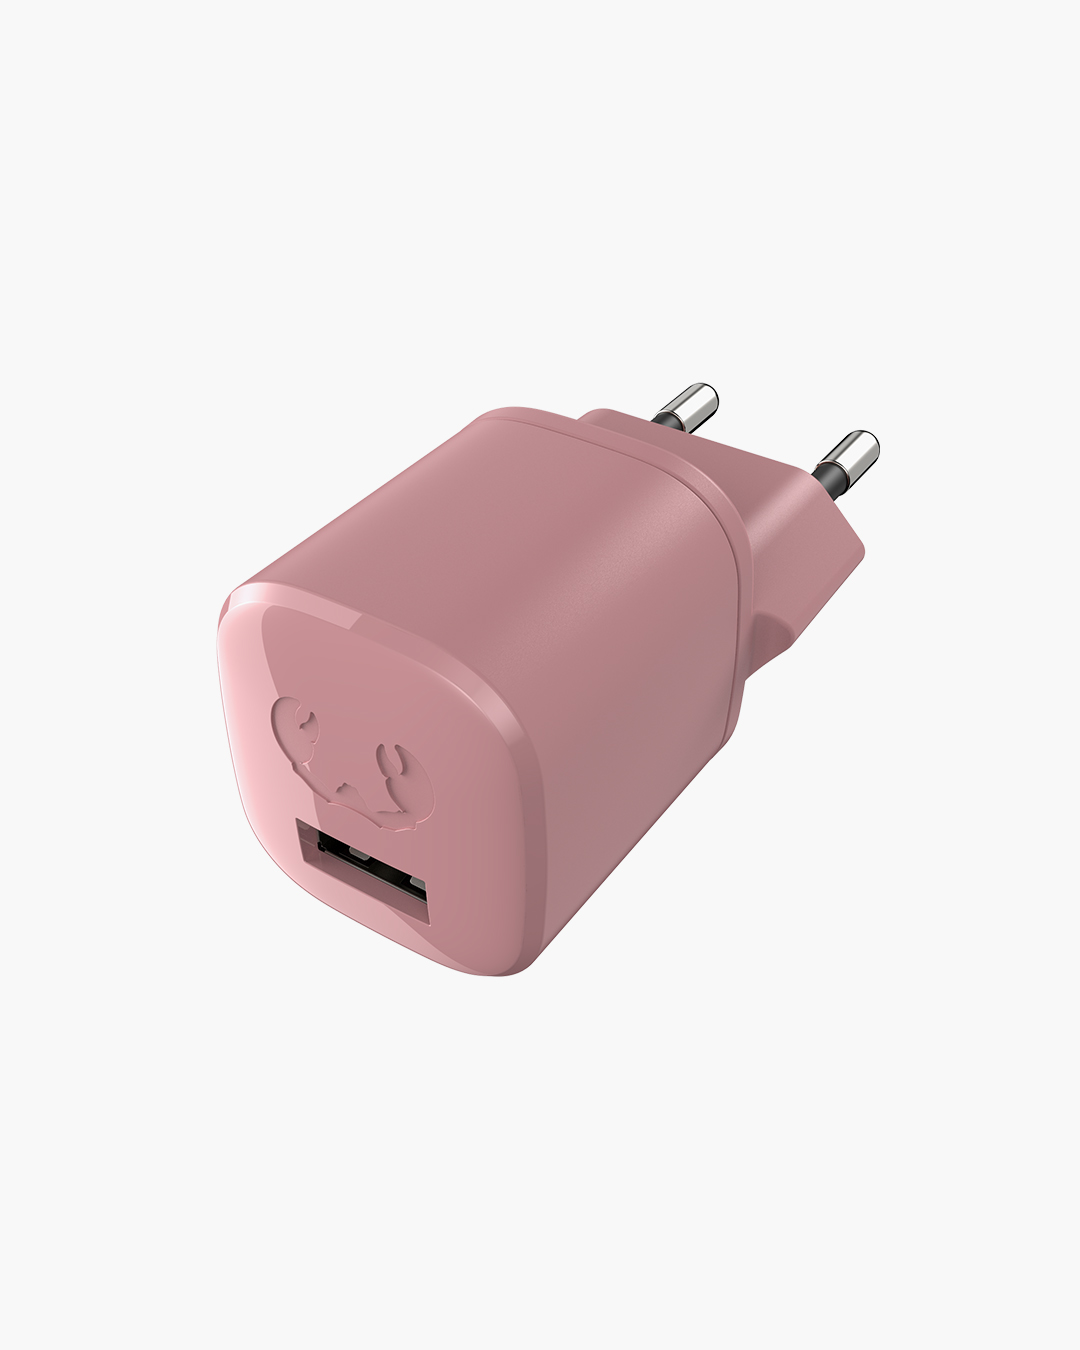 Fresh 'n Rebel - USB Mini Charger 12W - Dusty Pink